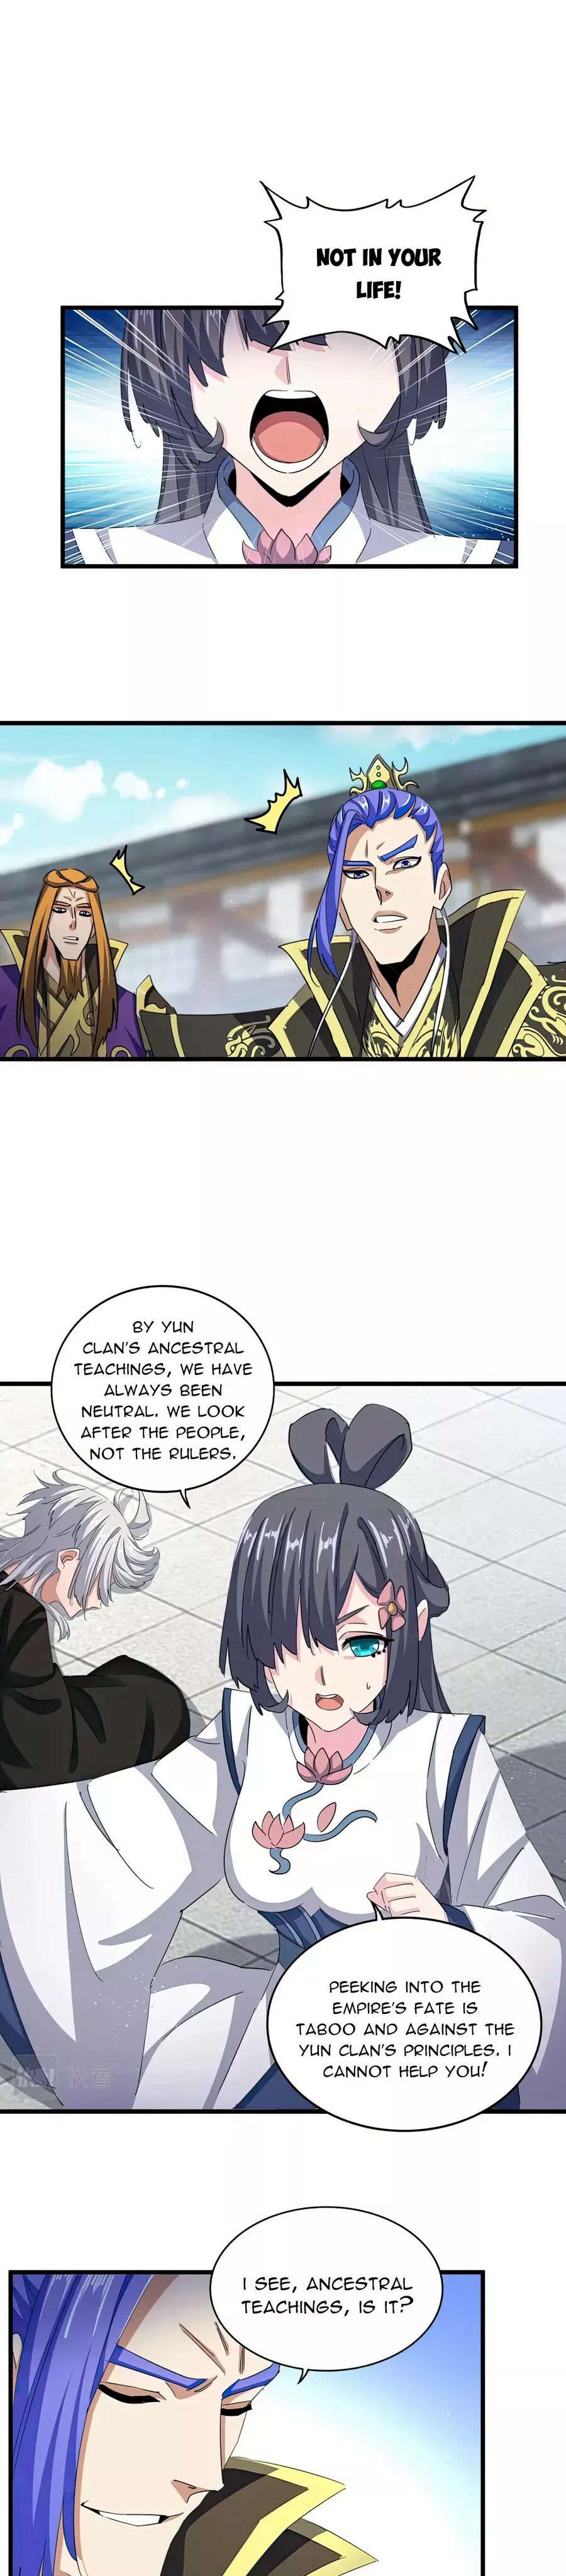 Magic Emperor - Page 1